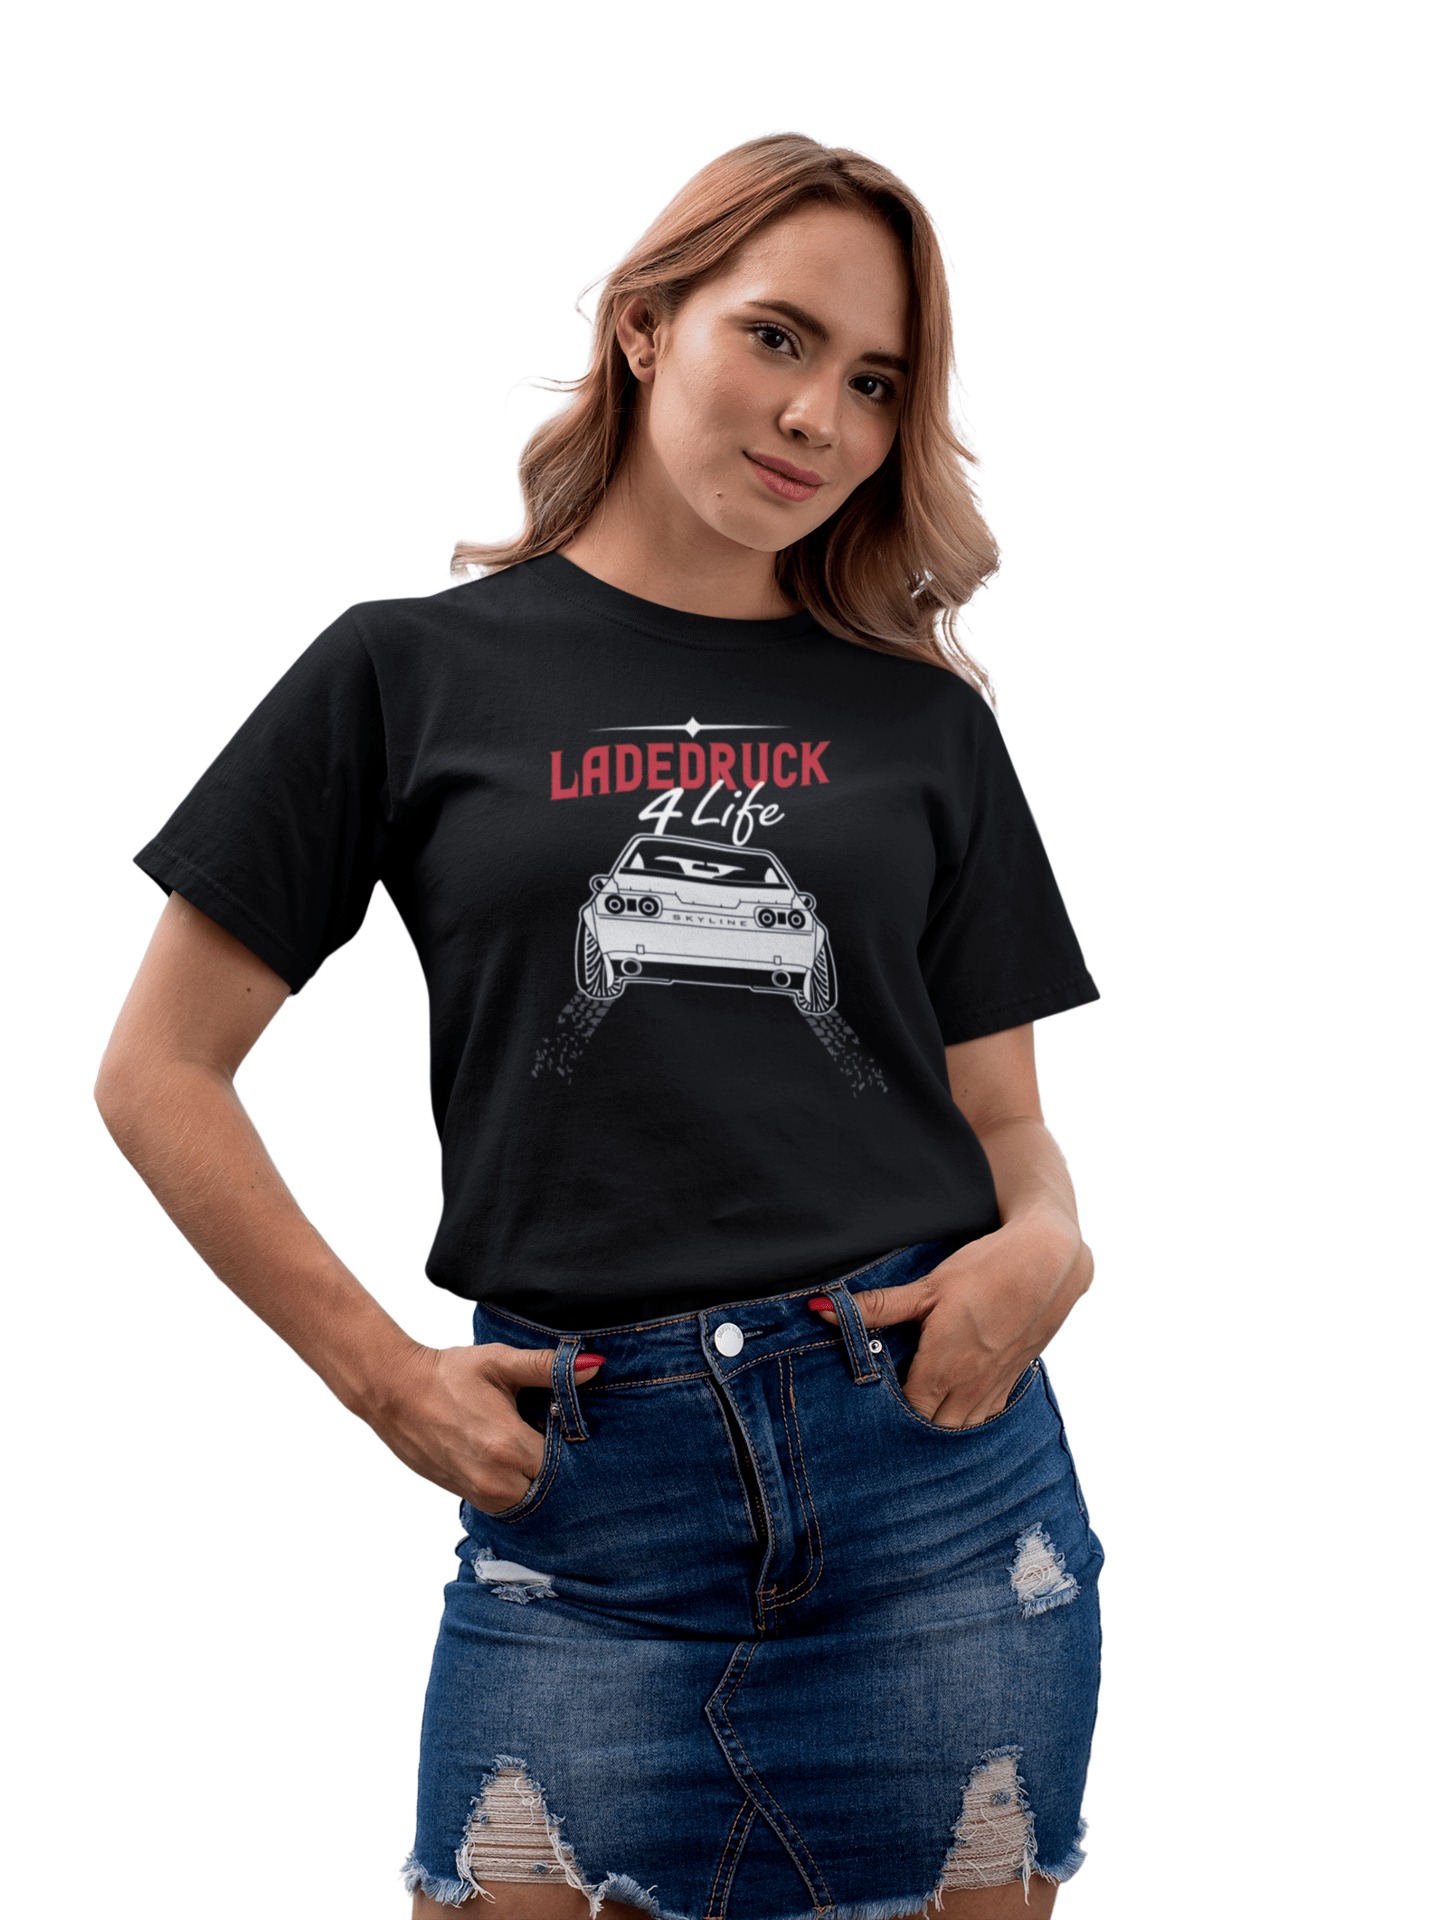 Ladedruck 4 Life - Damen T-Shirt von TurboArts